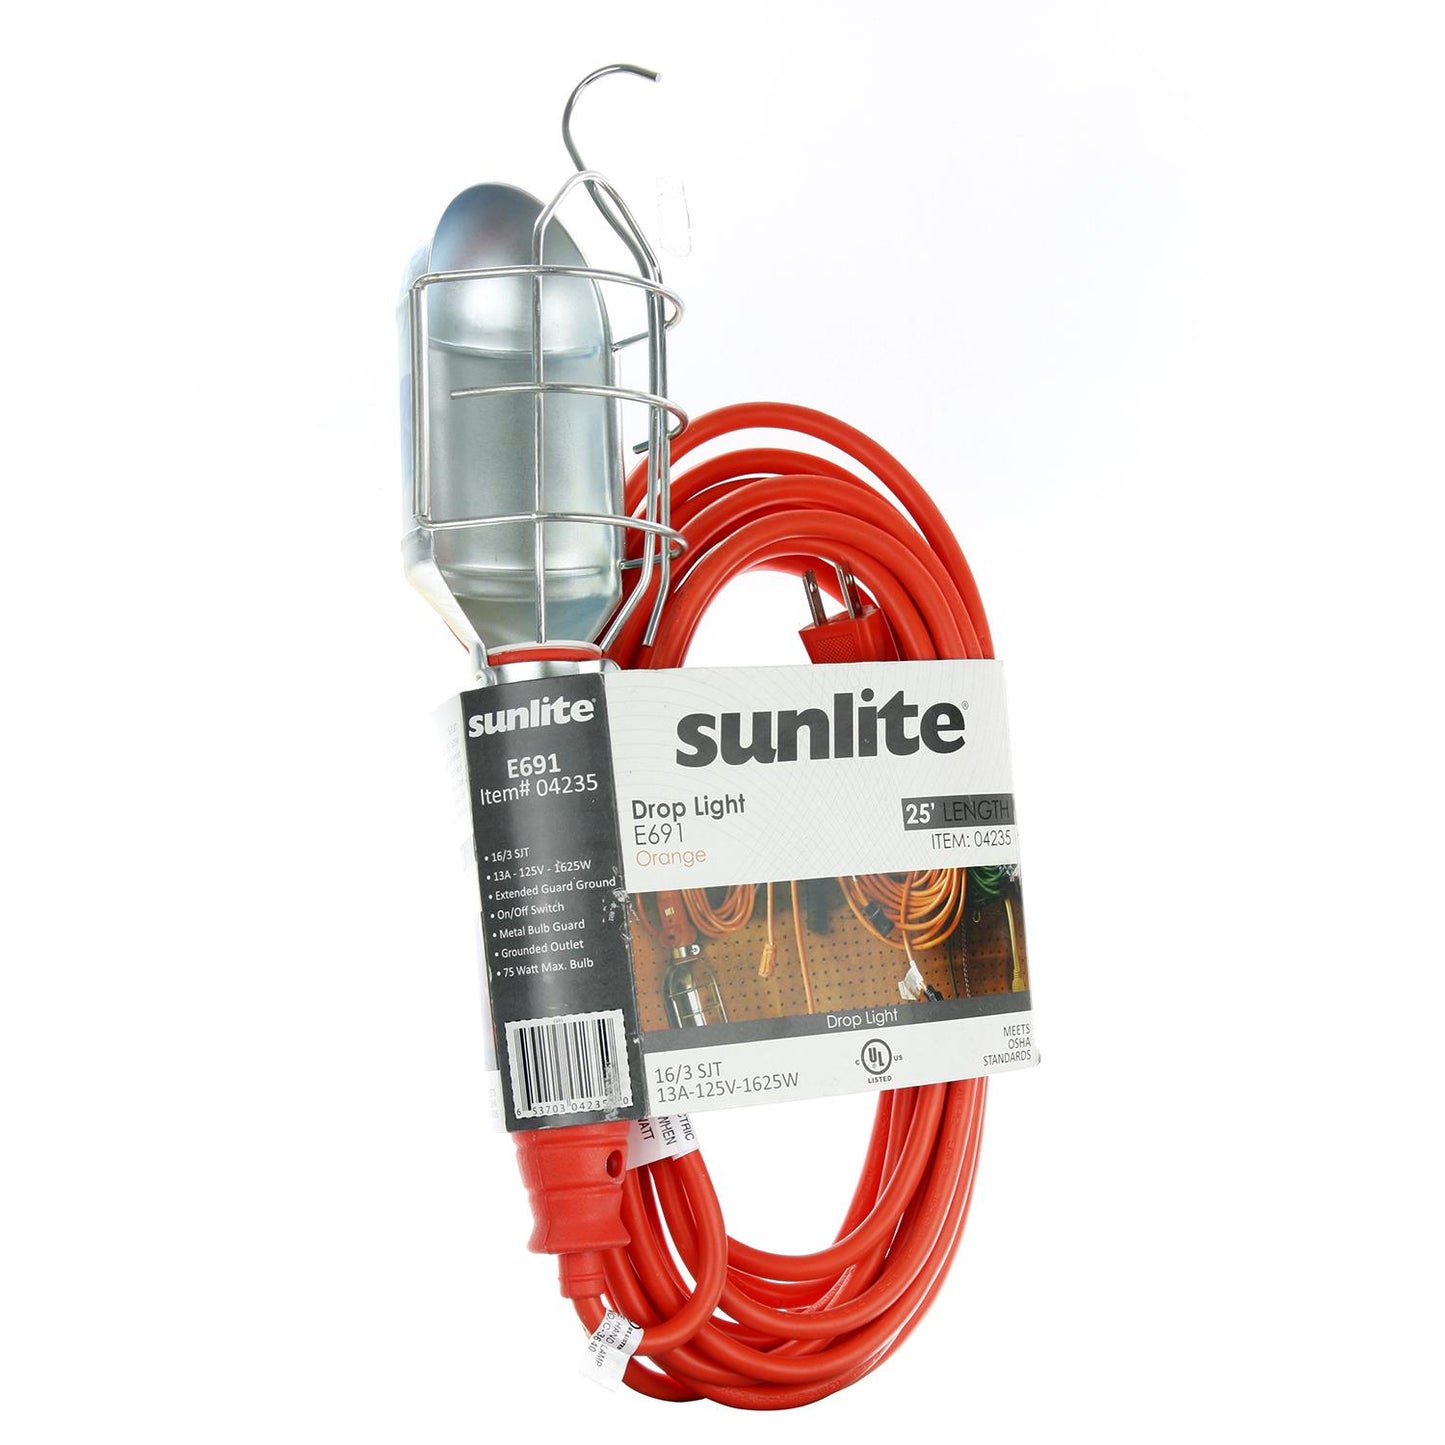 Sunlite E691 25 foot 75 Watt Incandescent Drop Light, Metel